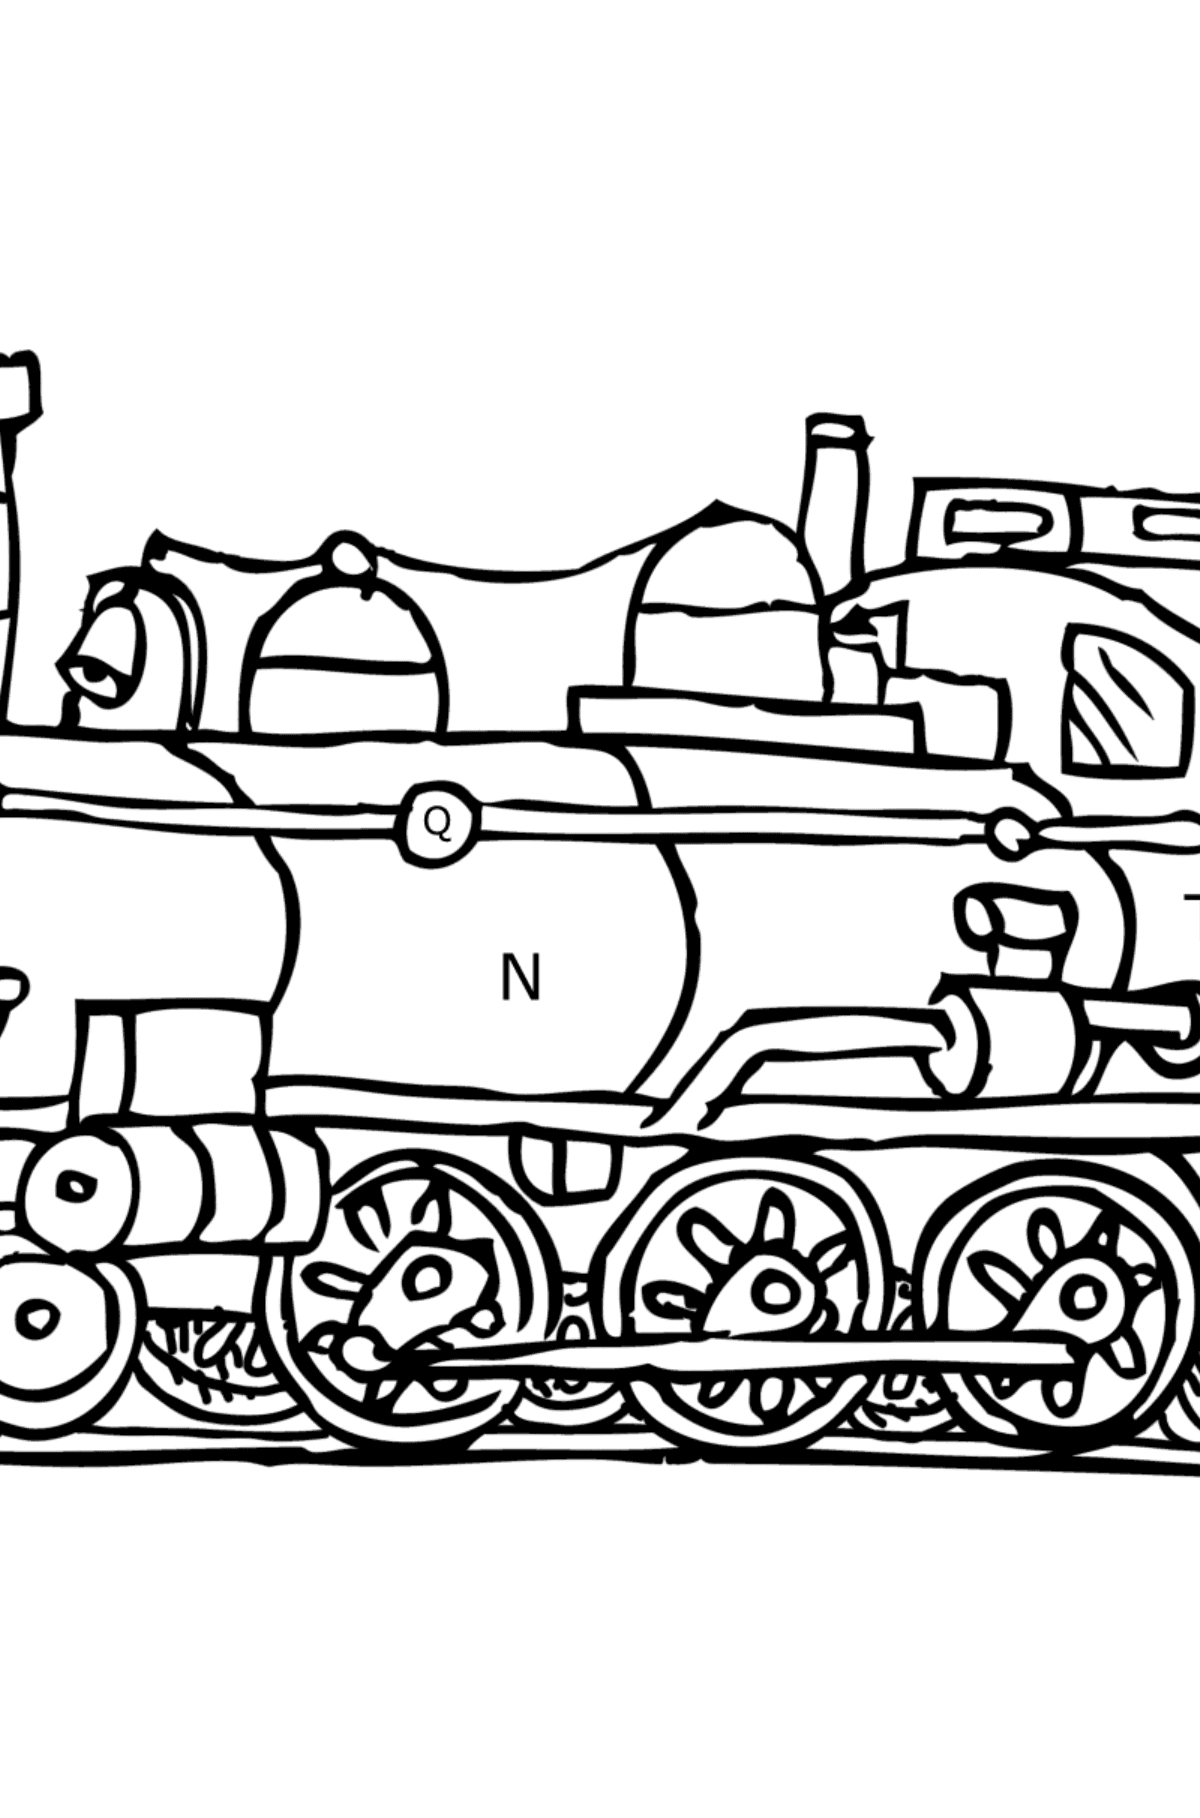 Tegning til fargelegging lokomotiv - Fargelegge etter bokstaver for barn